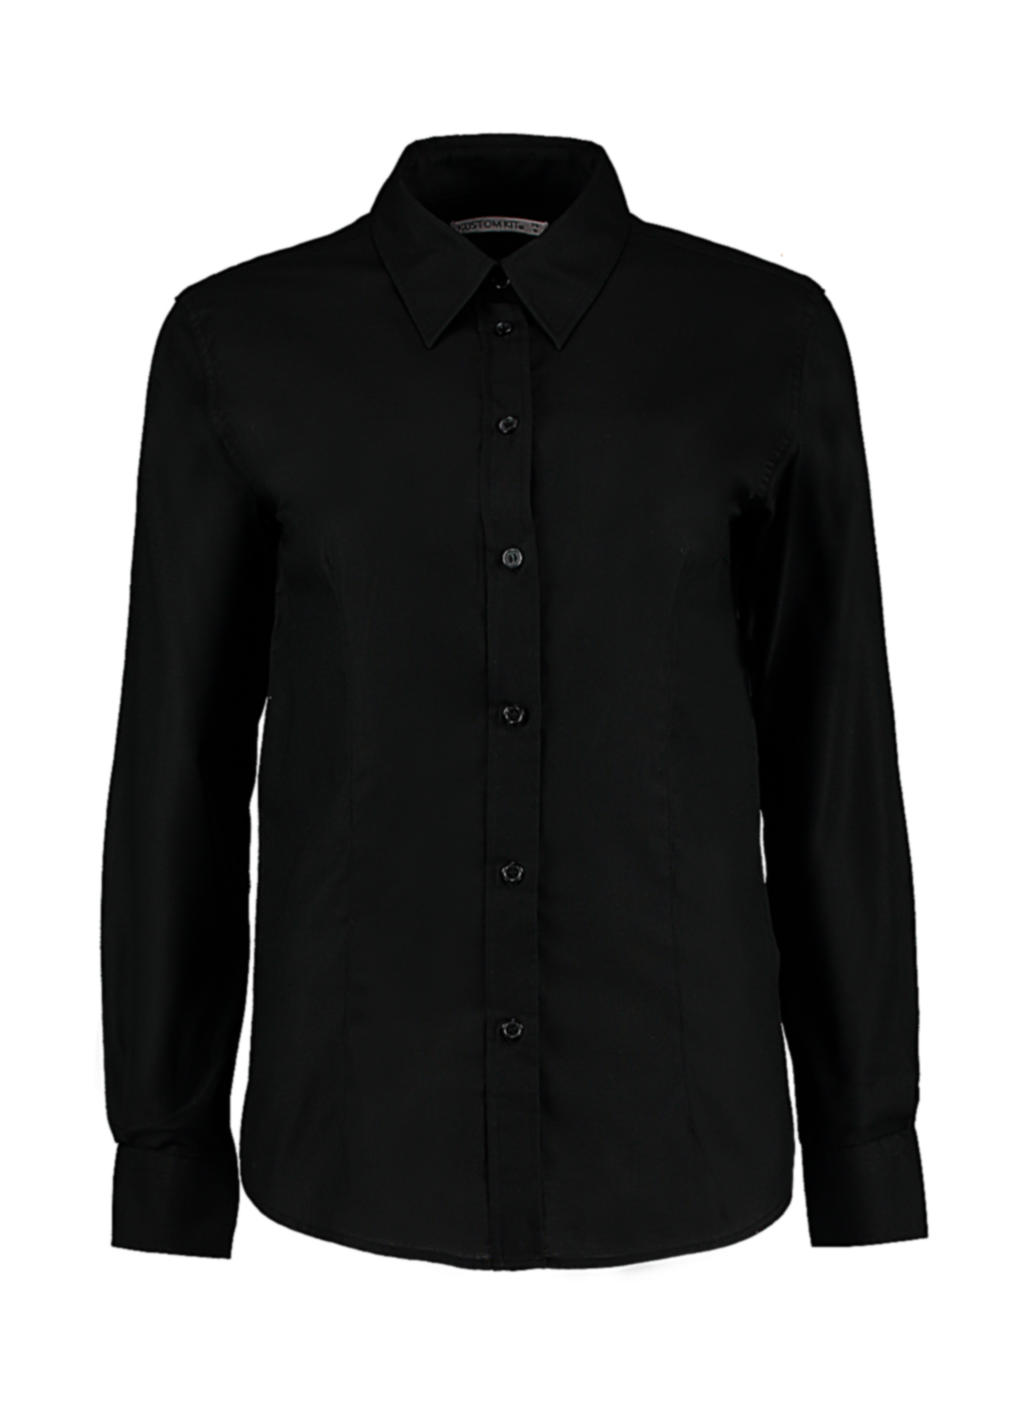 Blúzka Workwear Oxford s dlhými rukávmi - black